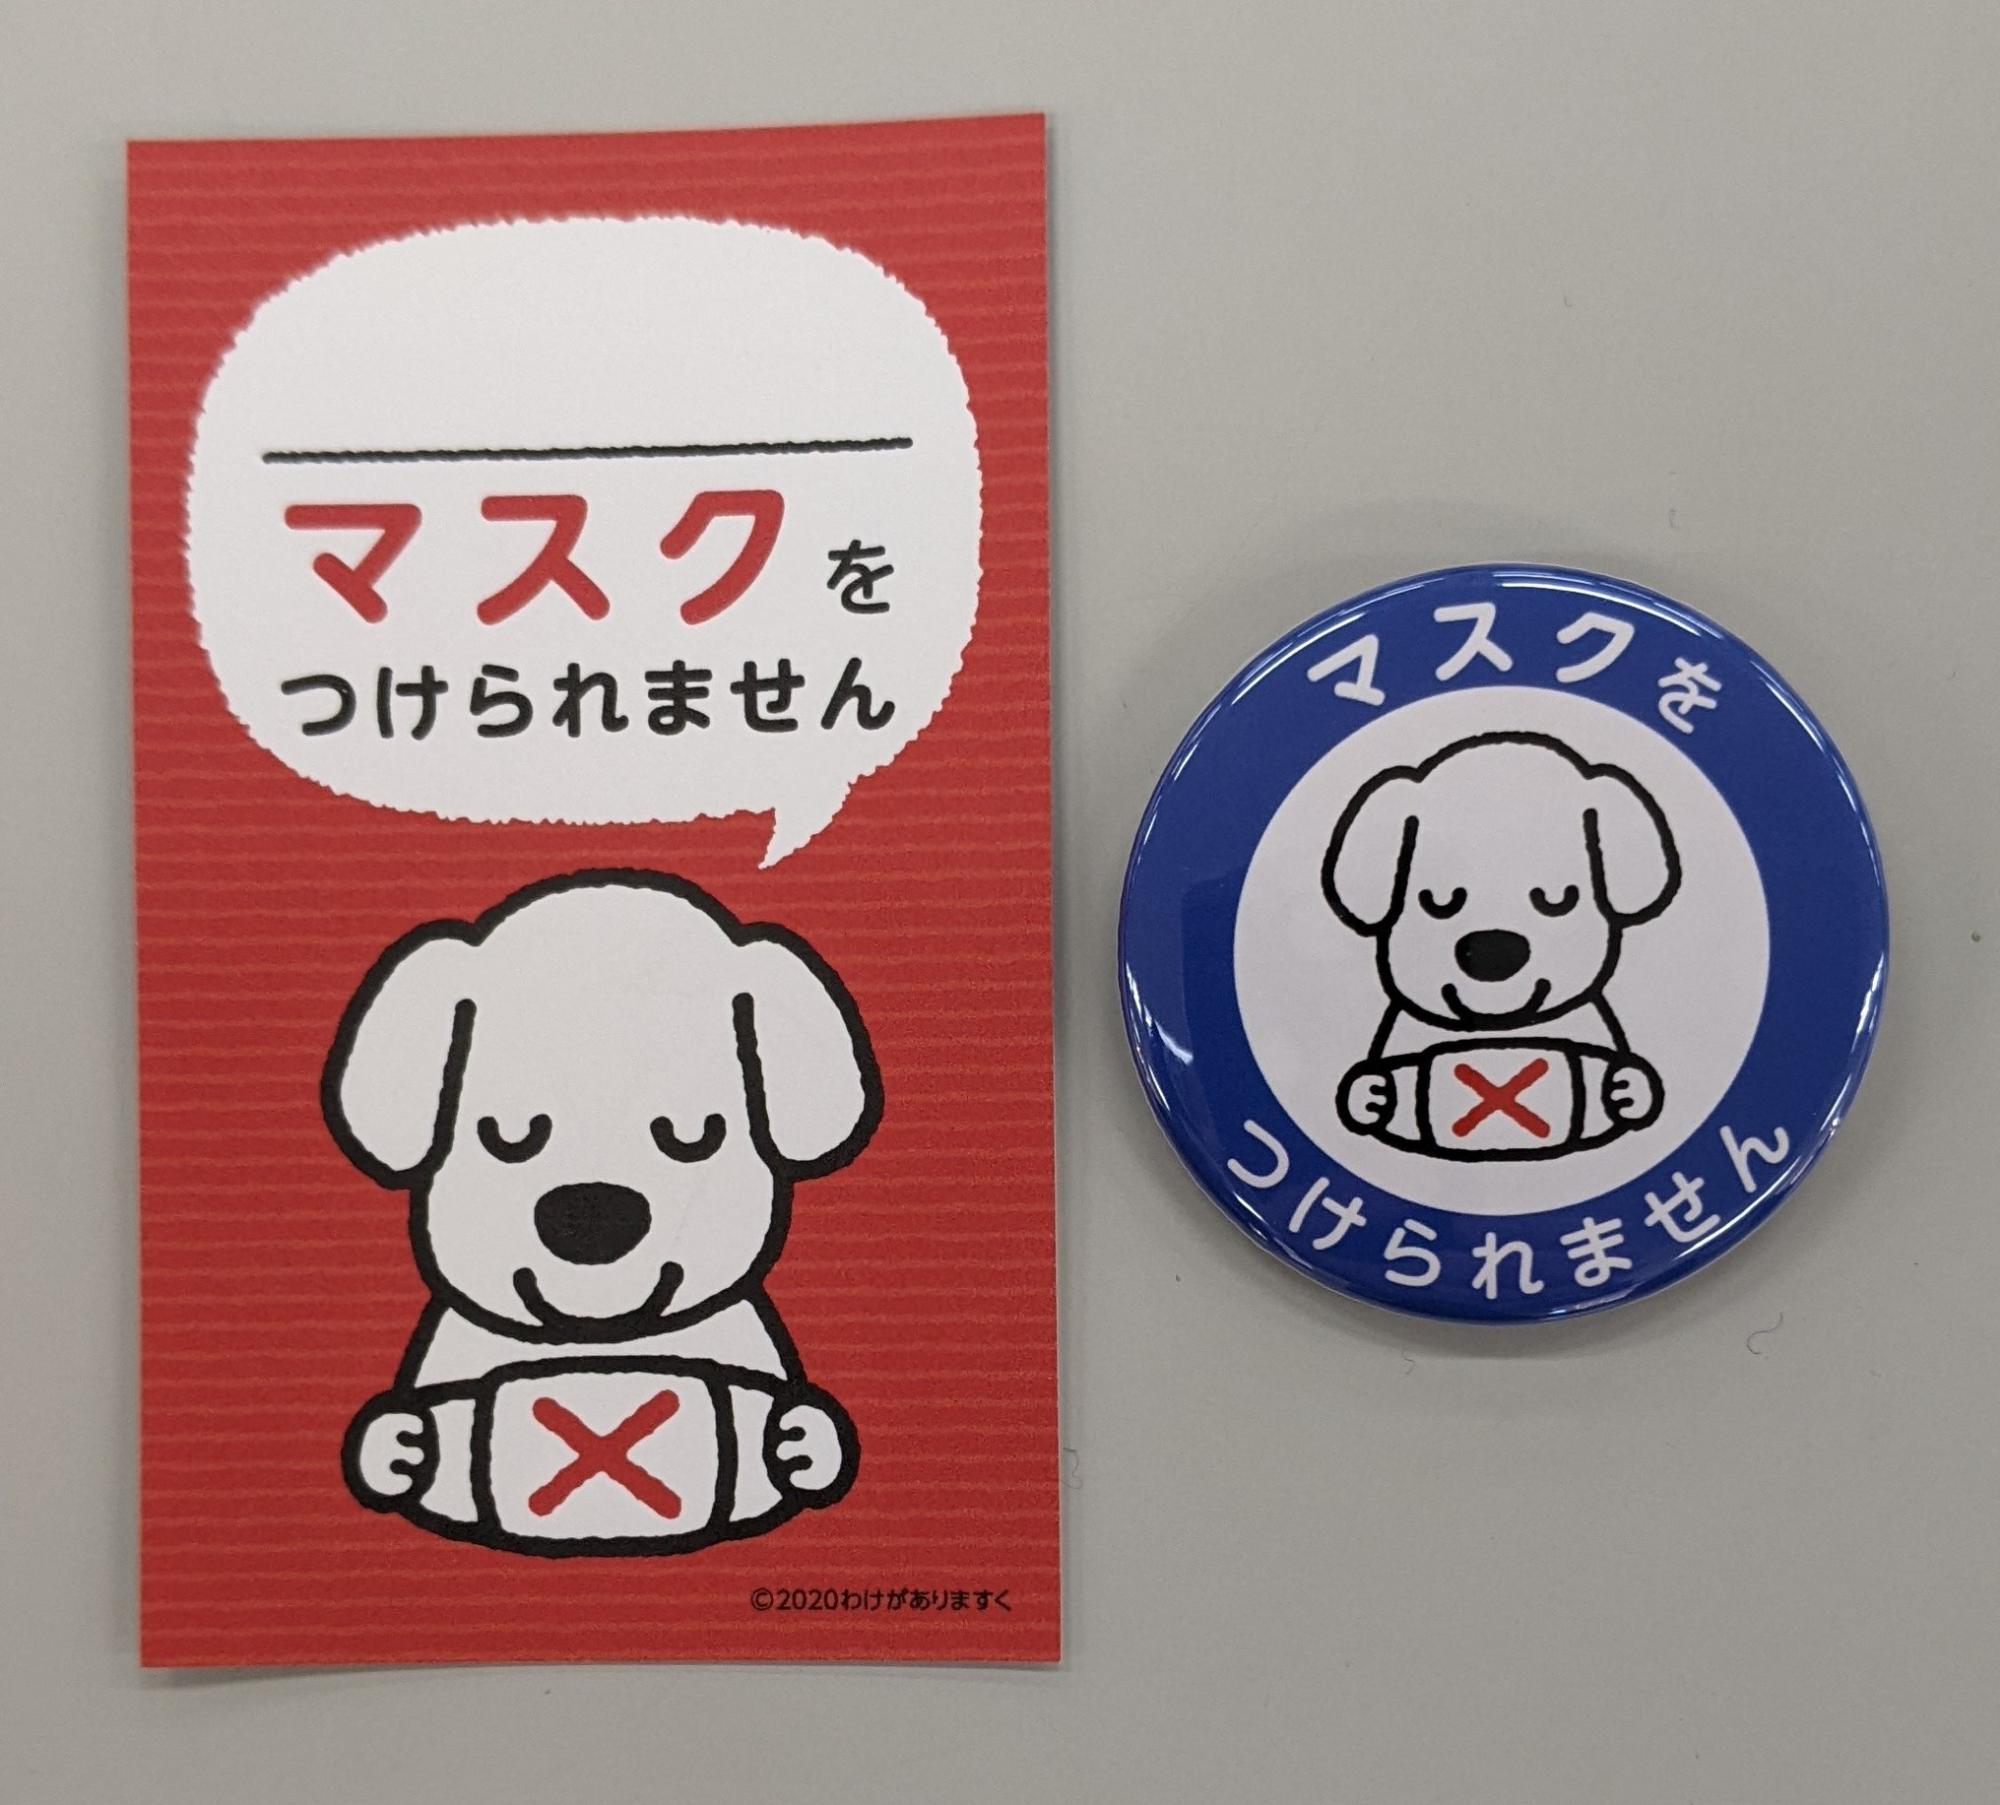 「マスクをつけられません」と書かれ、犬がバツ印がついたマスクを持っているイラストが描かれている意思表示缶バッジとカードの写真